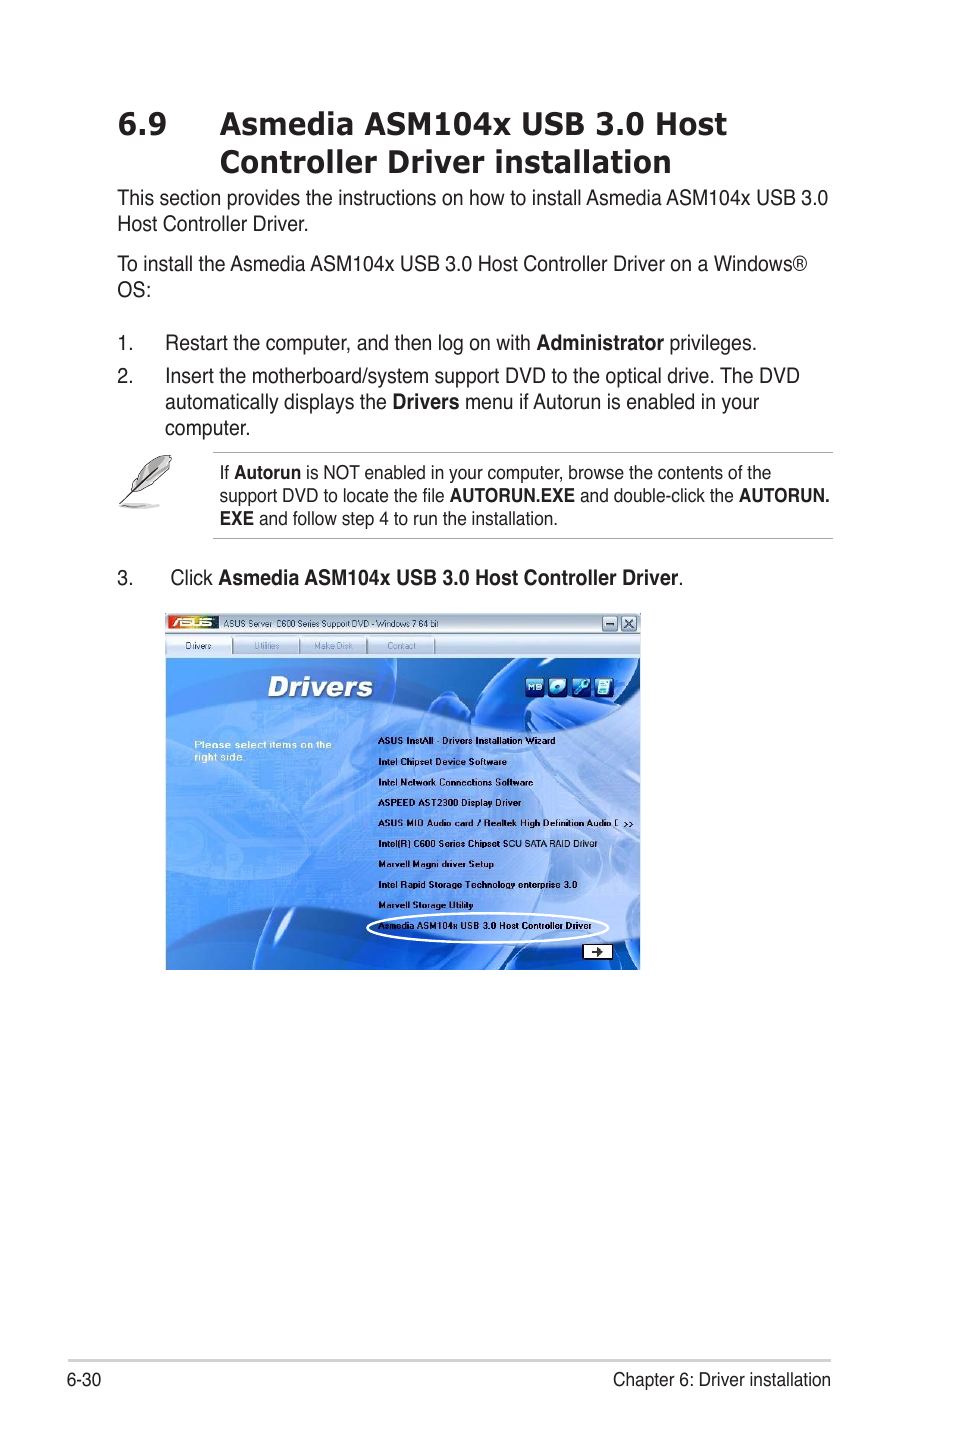 bırakın stres fil asus asmedia usb 3.0 driver bildirim tanıtım gerçeklik